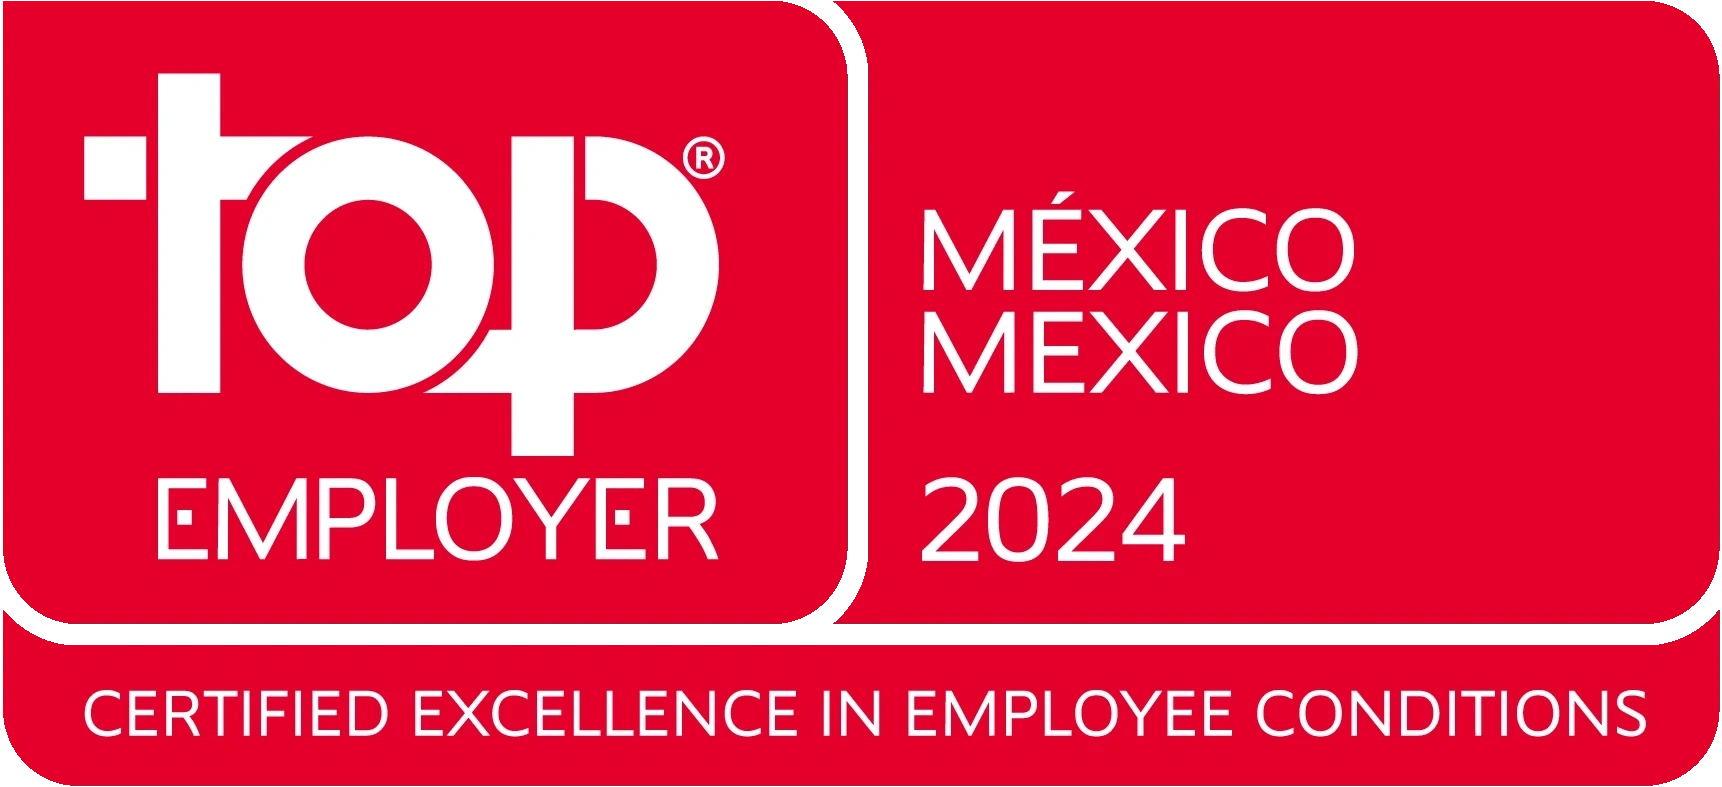 Top employer en México